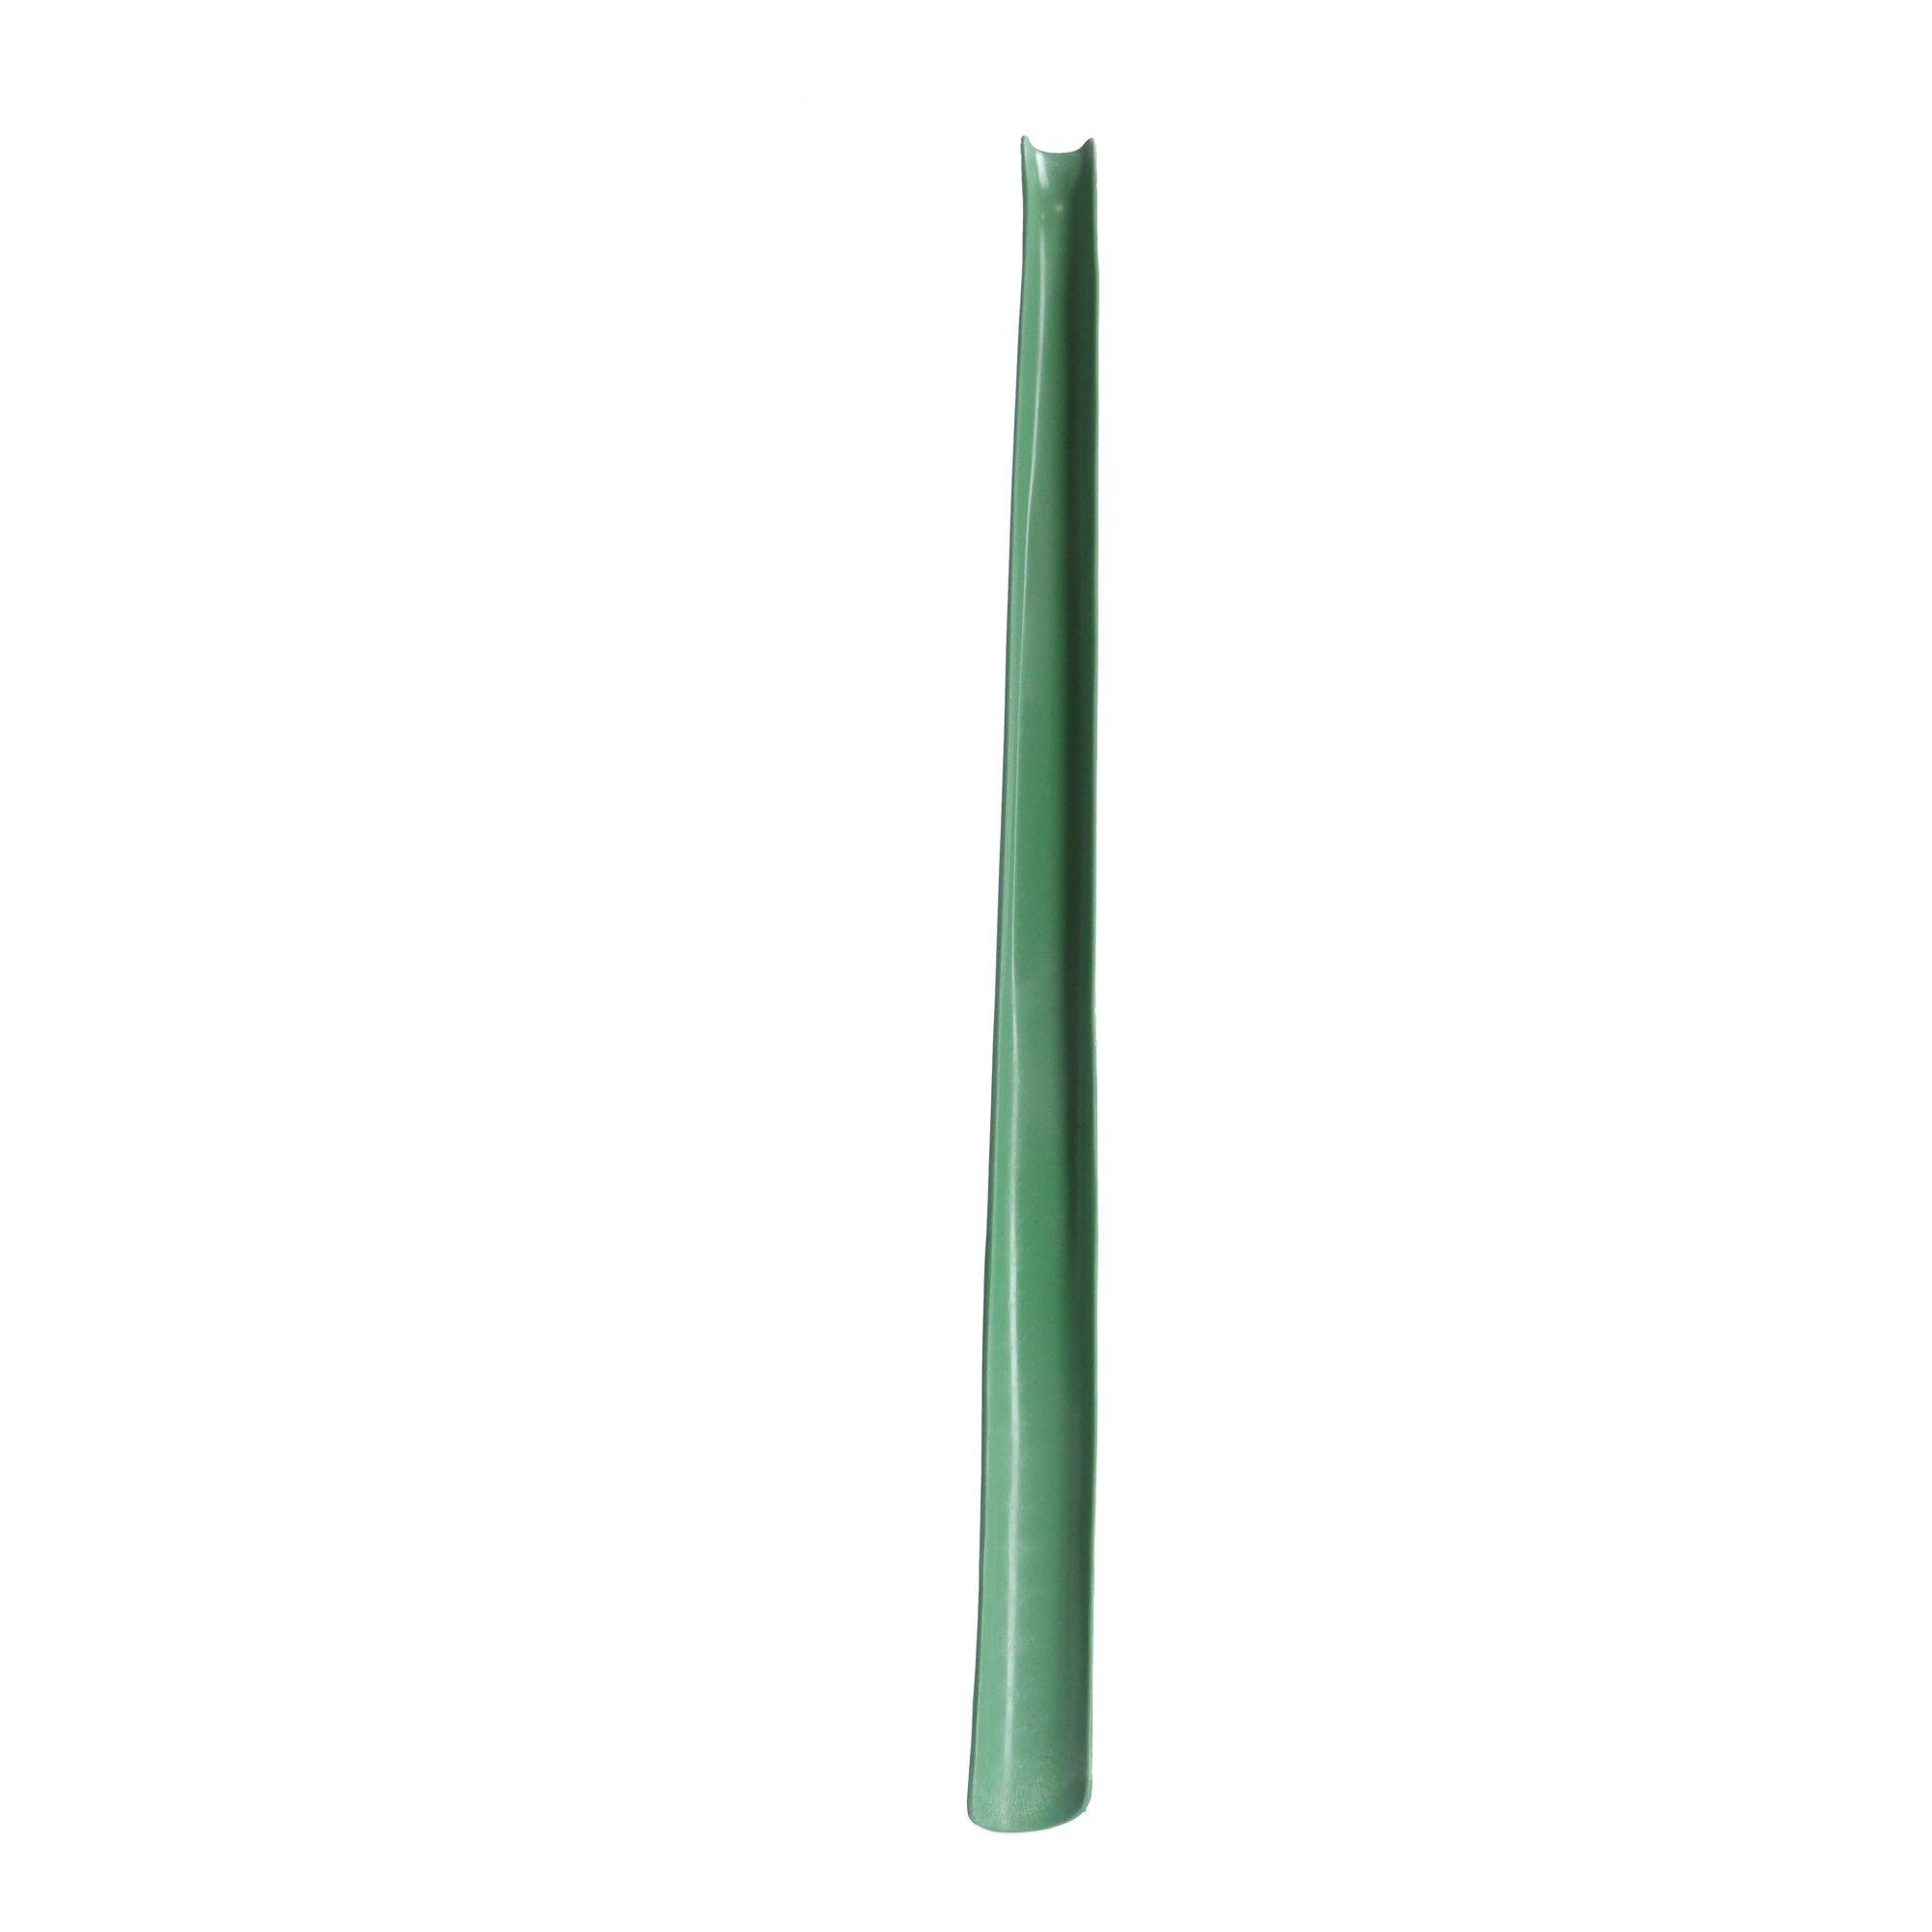 Shoehorn B001 long made of polypropylene - green